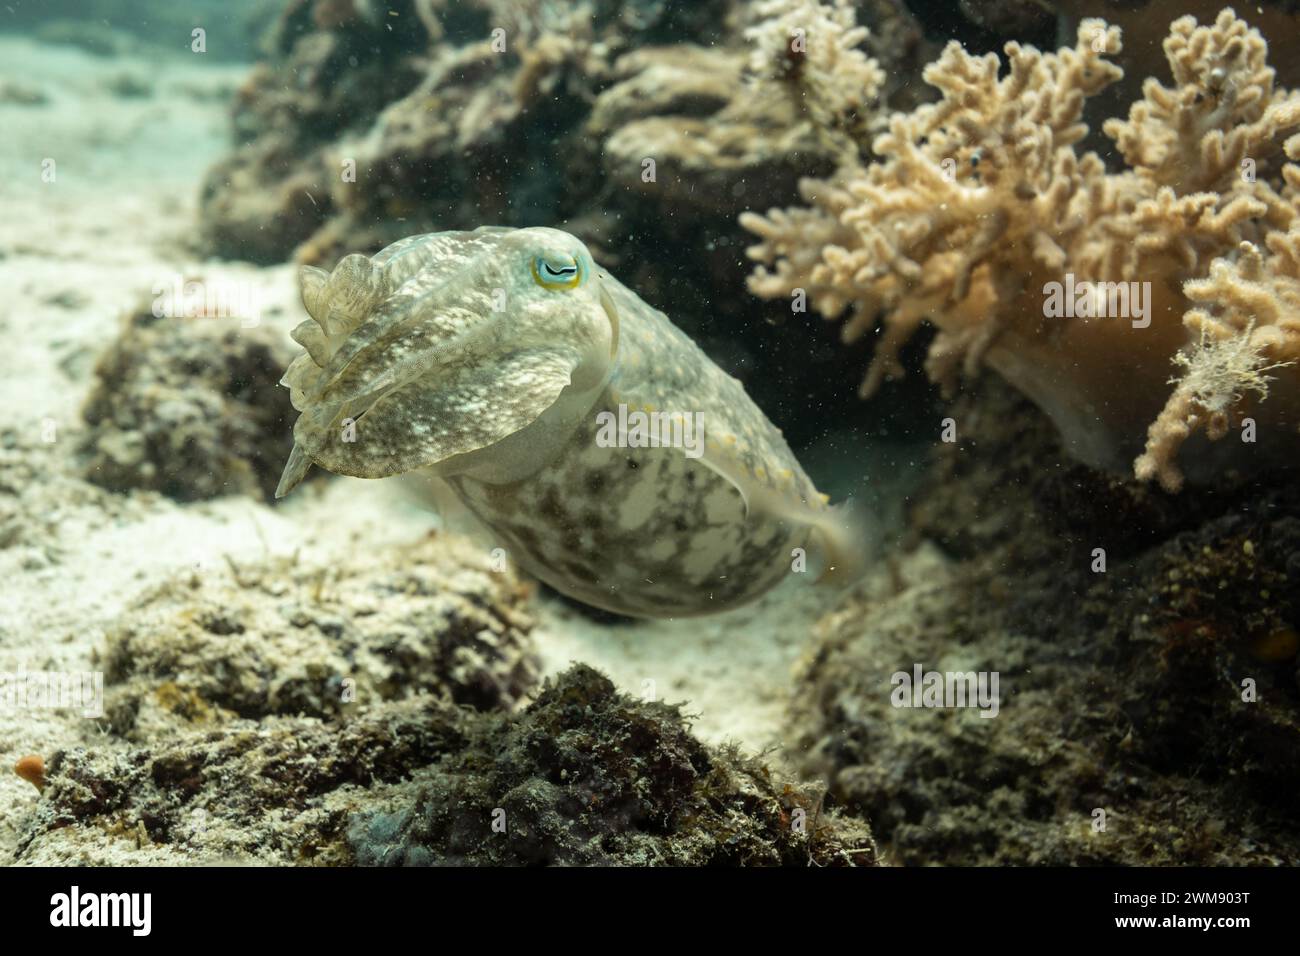 Cuddlefish, Sepiida, nageant le long du récif corallien tropical affichant un camouflage tacheté brun et blanc Banque D'Images